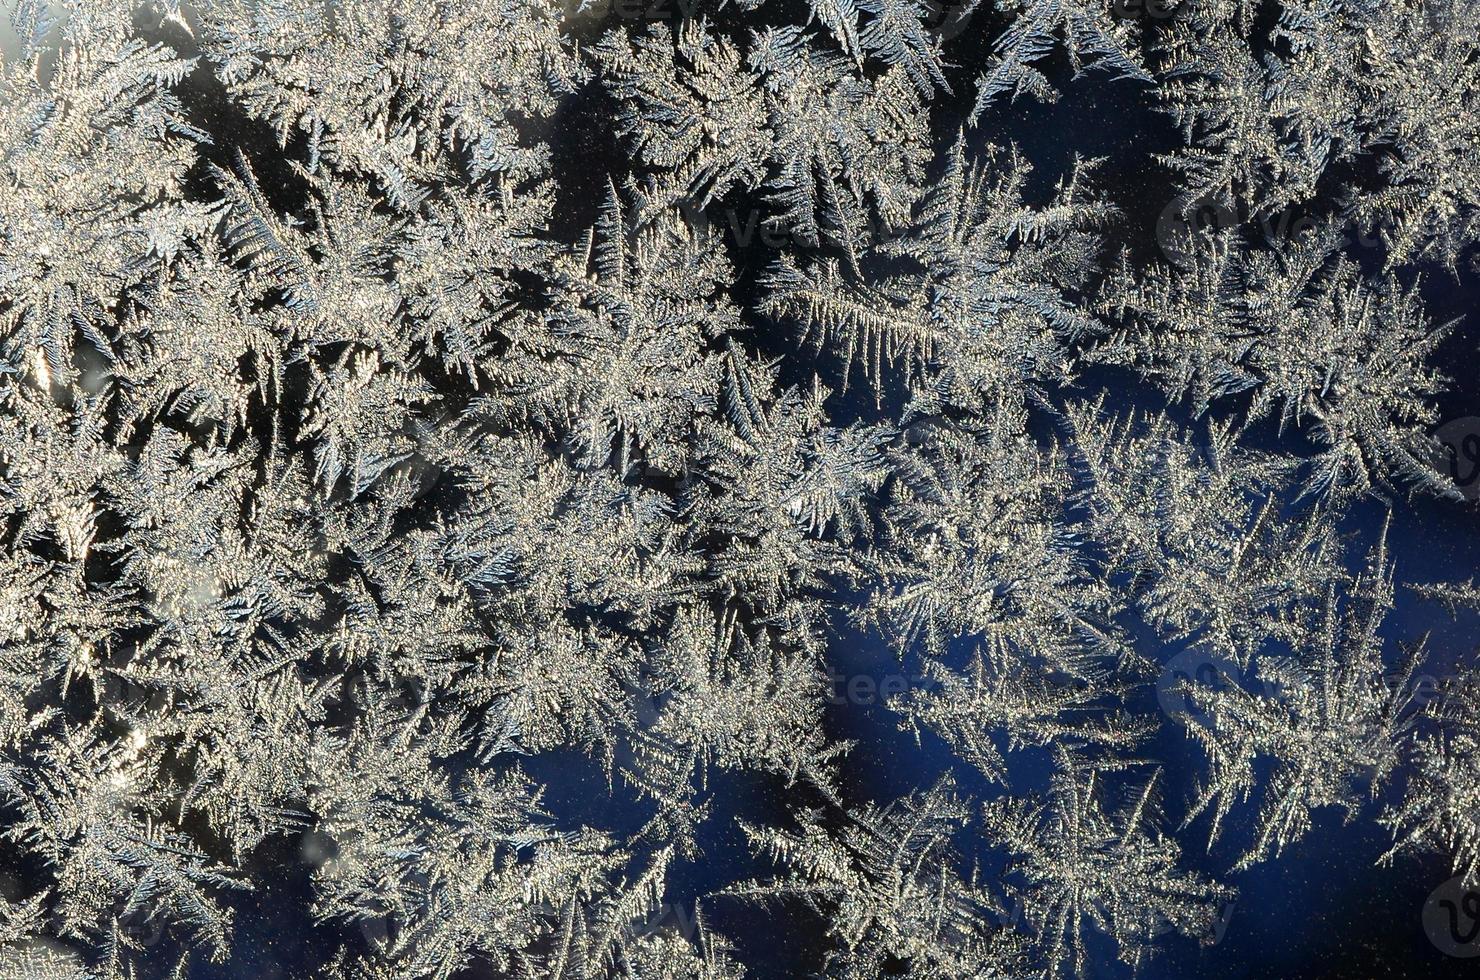 i fiocchi di neve brina brina macro su finestra bicchiere Pannello foto